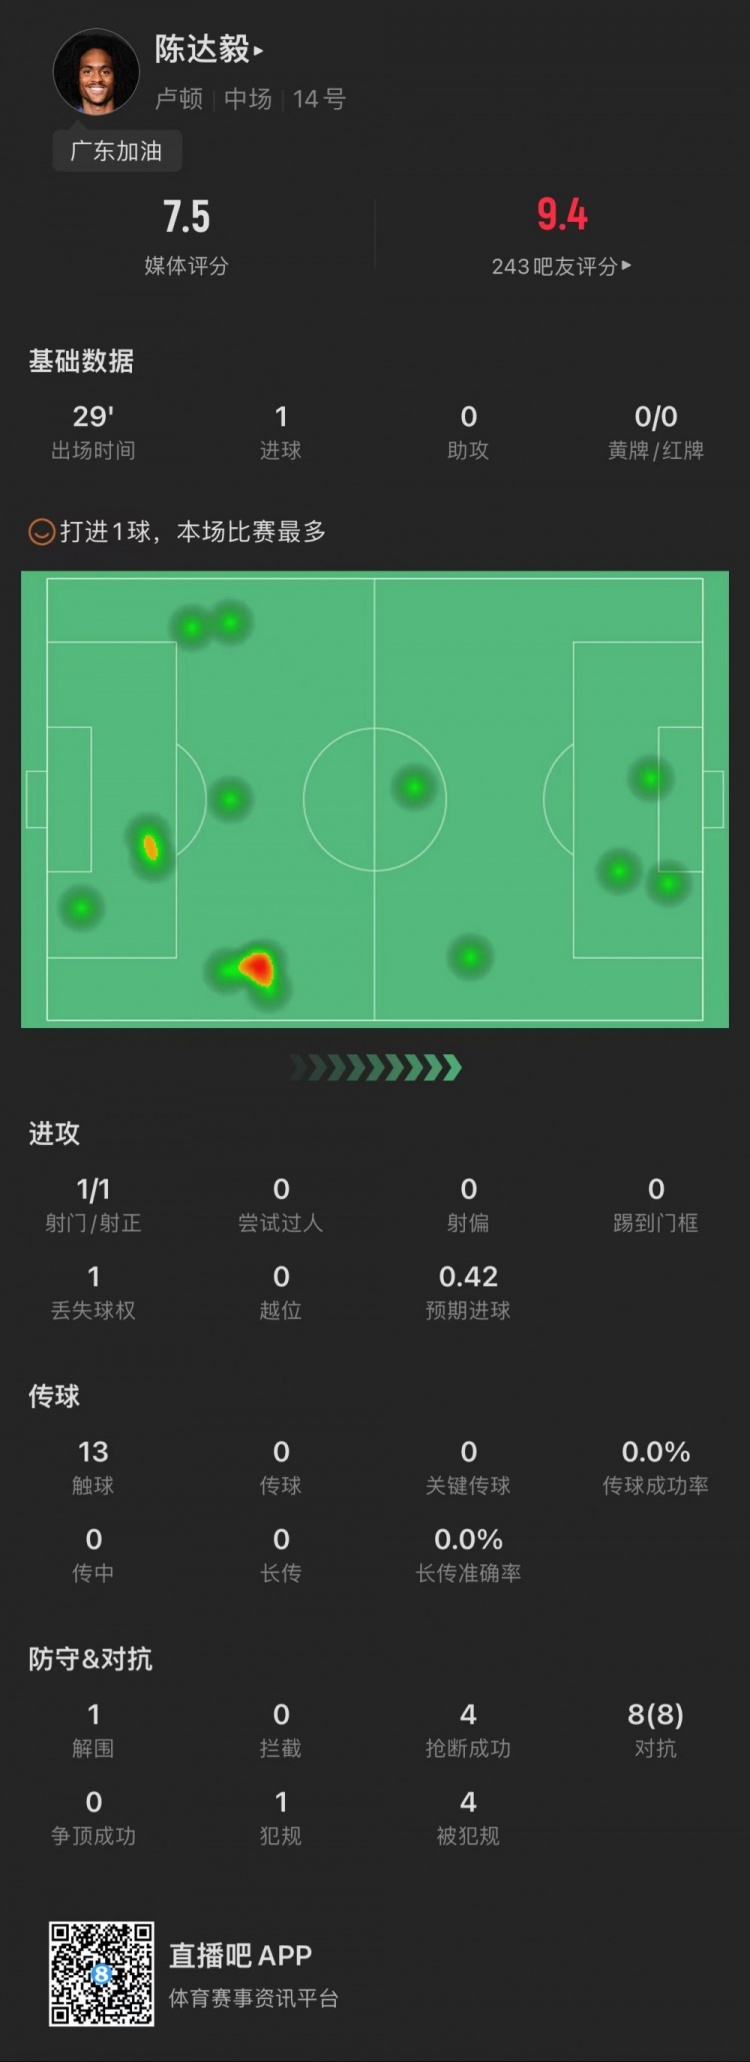 陈达毅vs利物浦全场数据：1粒进球，8次赢得对抗，4次抢断